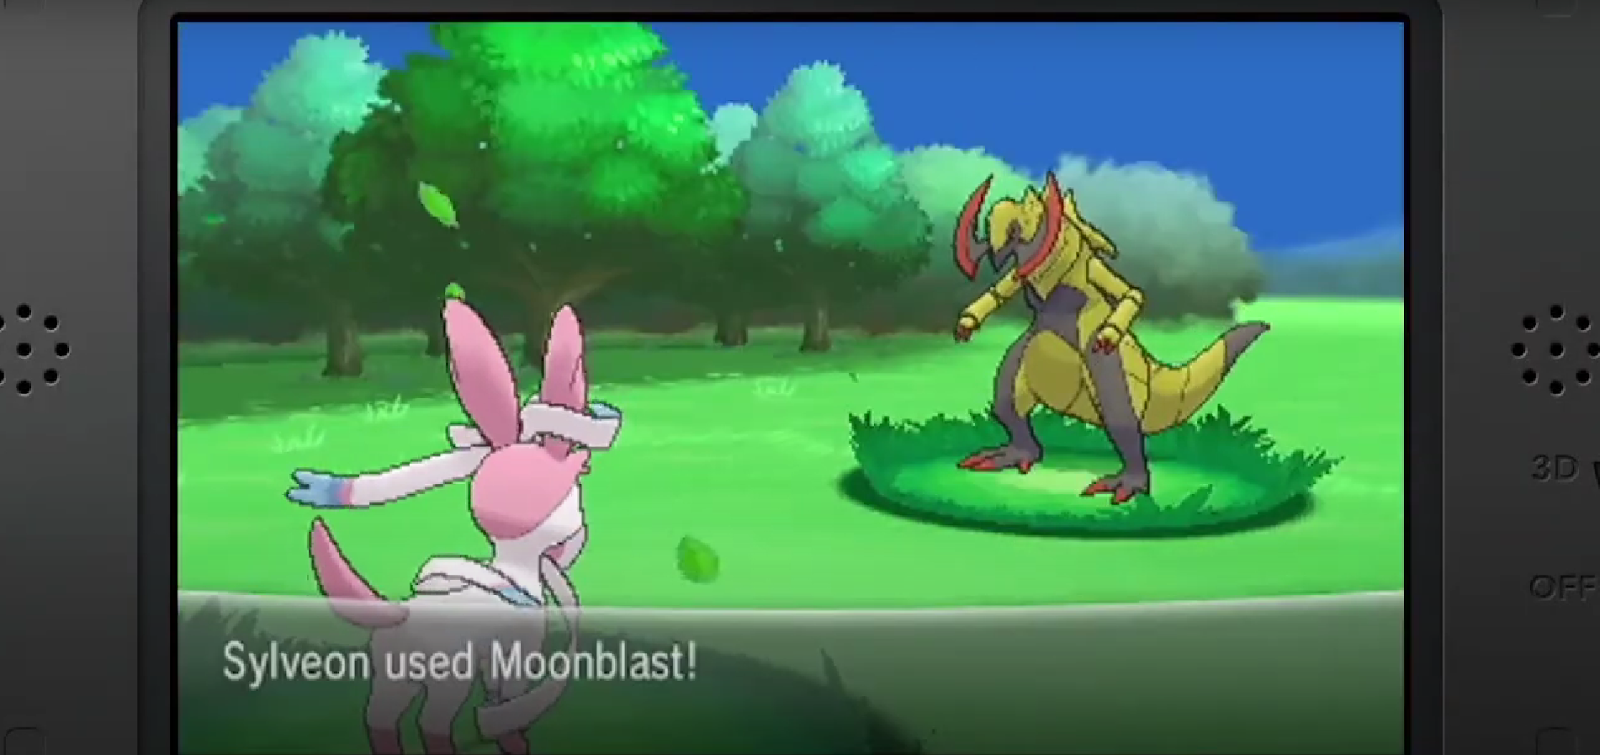 An in game screenshot of a Pokémon battle from Pokémon X. 